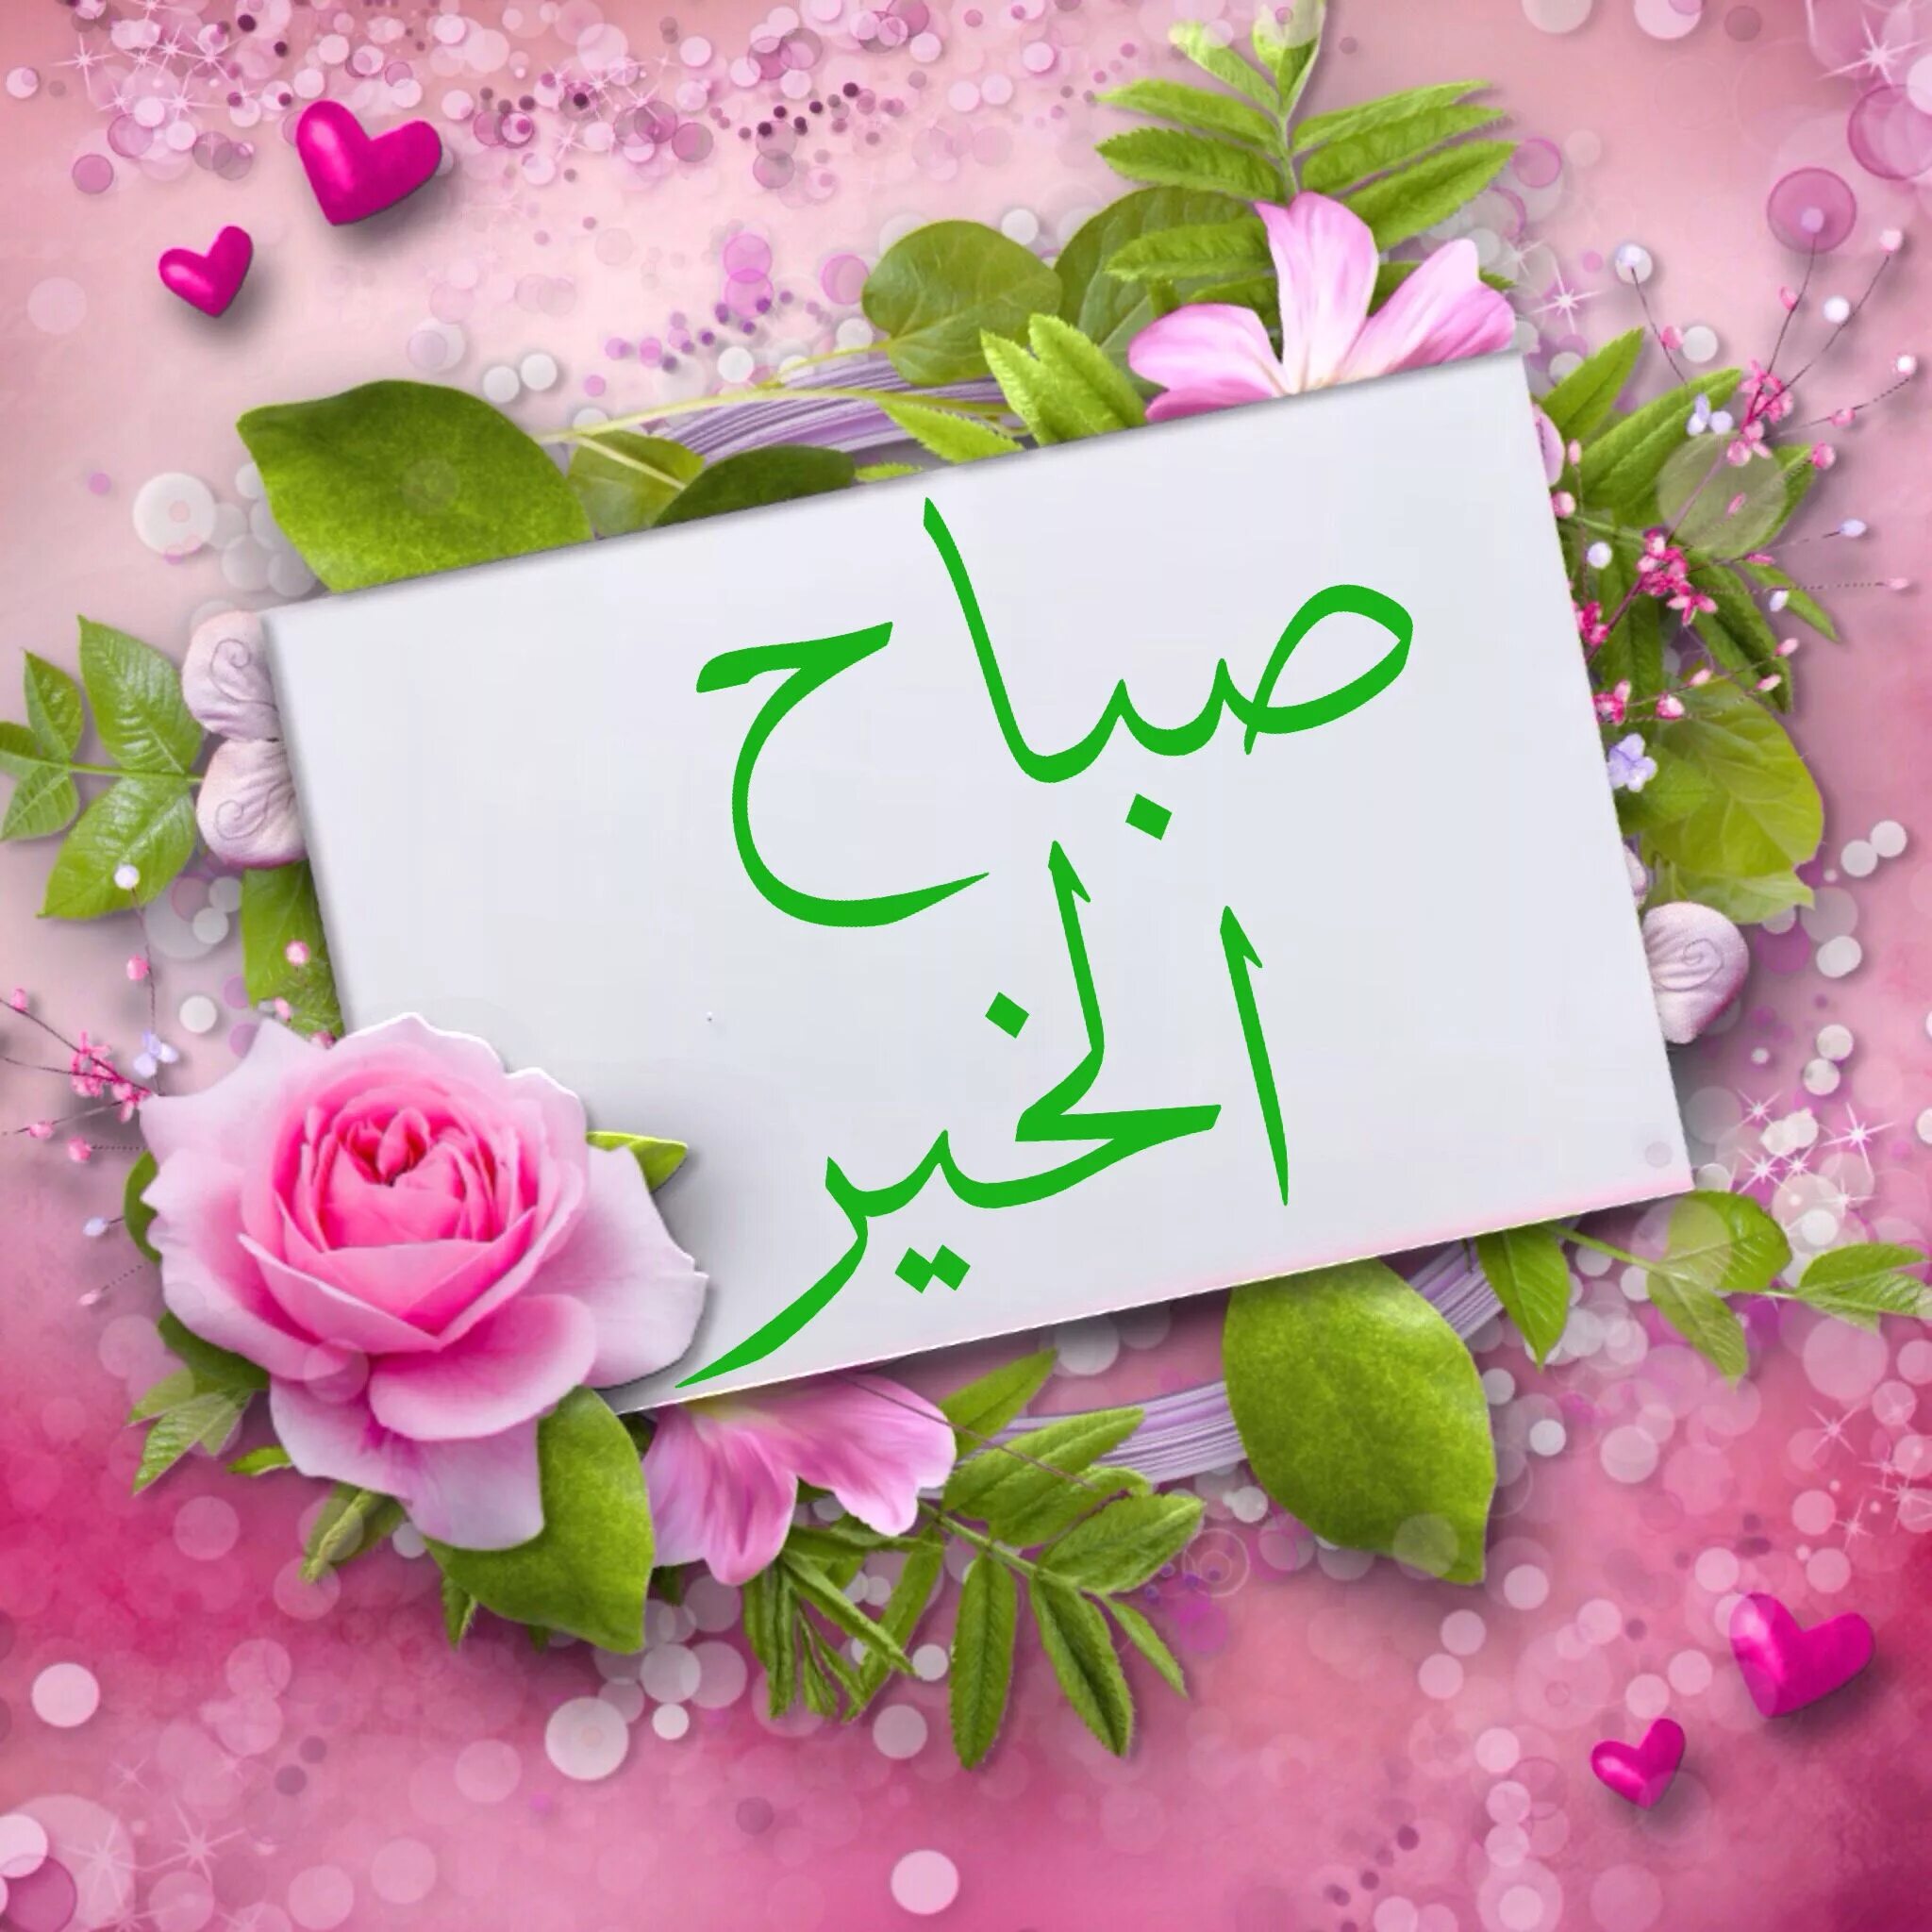 Арабский язык поздравления. Доброе утро на арабском языке. Открытки с добрым утром на арабском языке. С добрым утром на арабском. Добрый день на арабском языке.